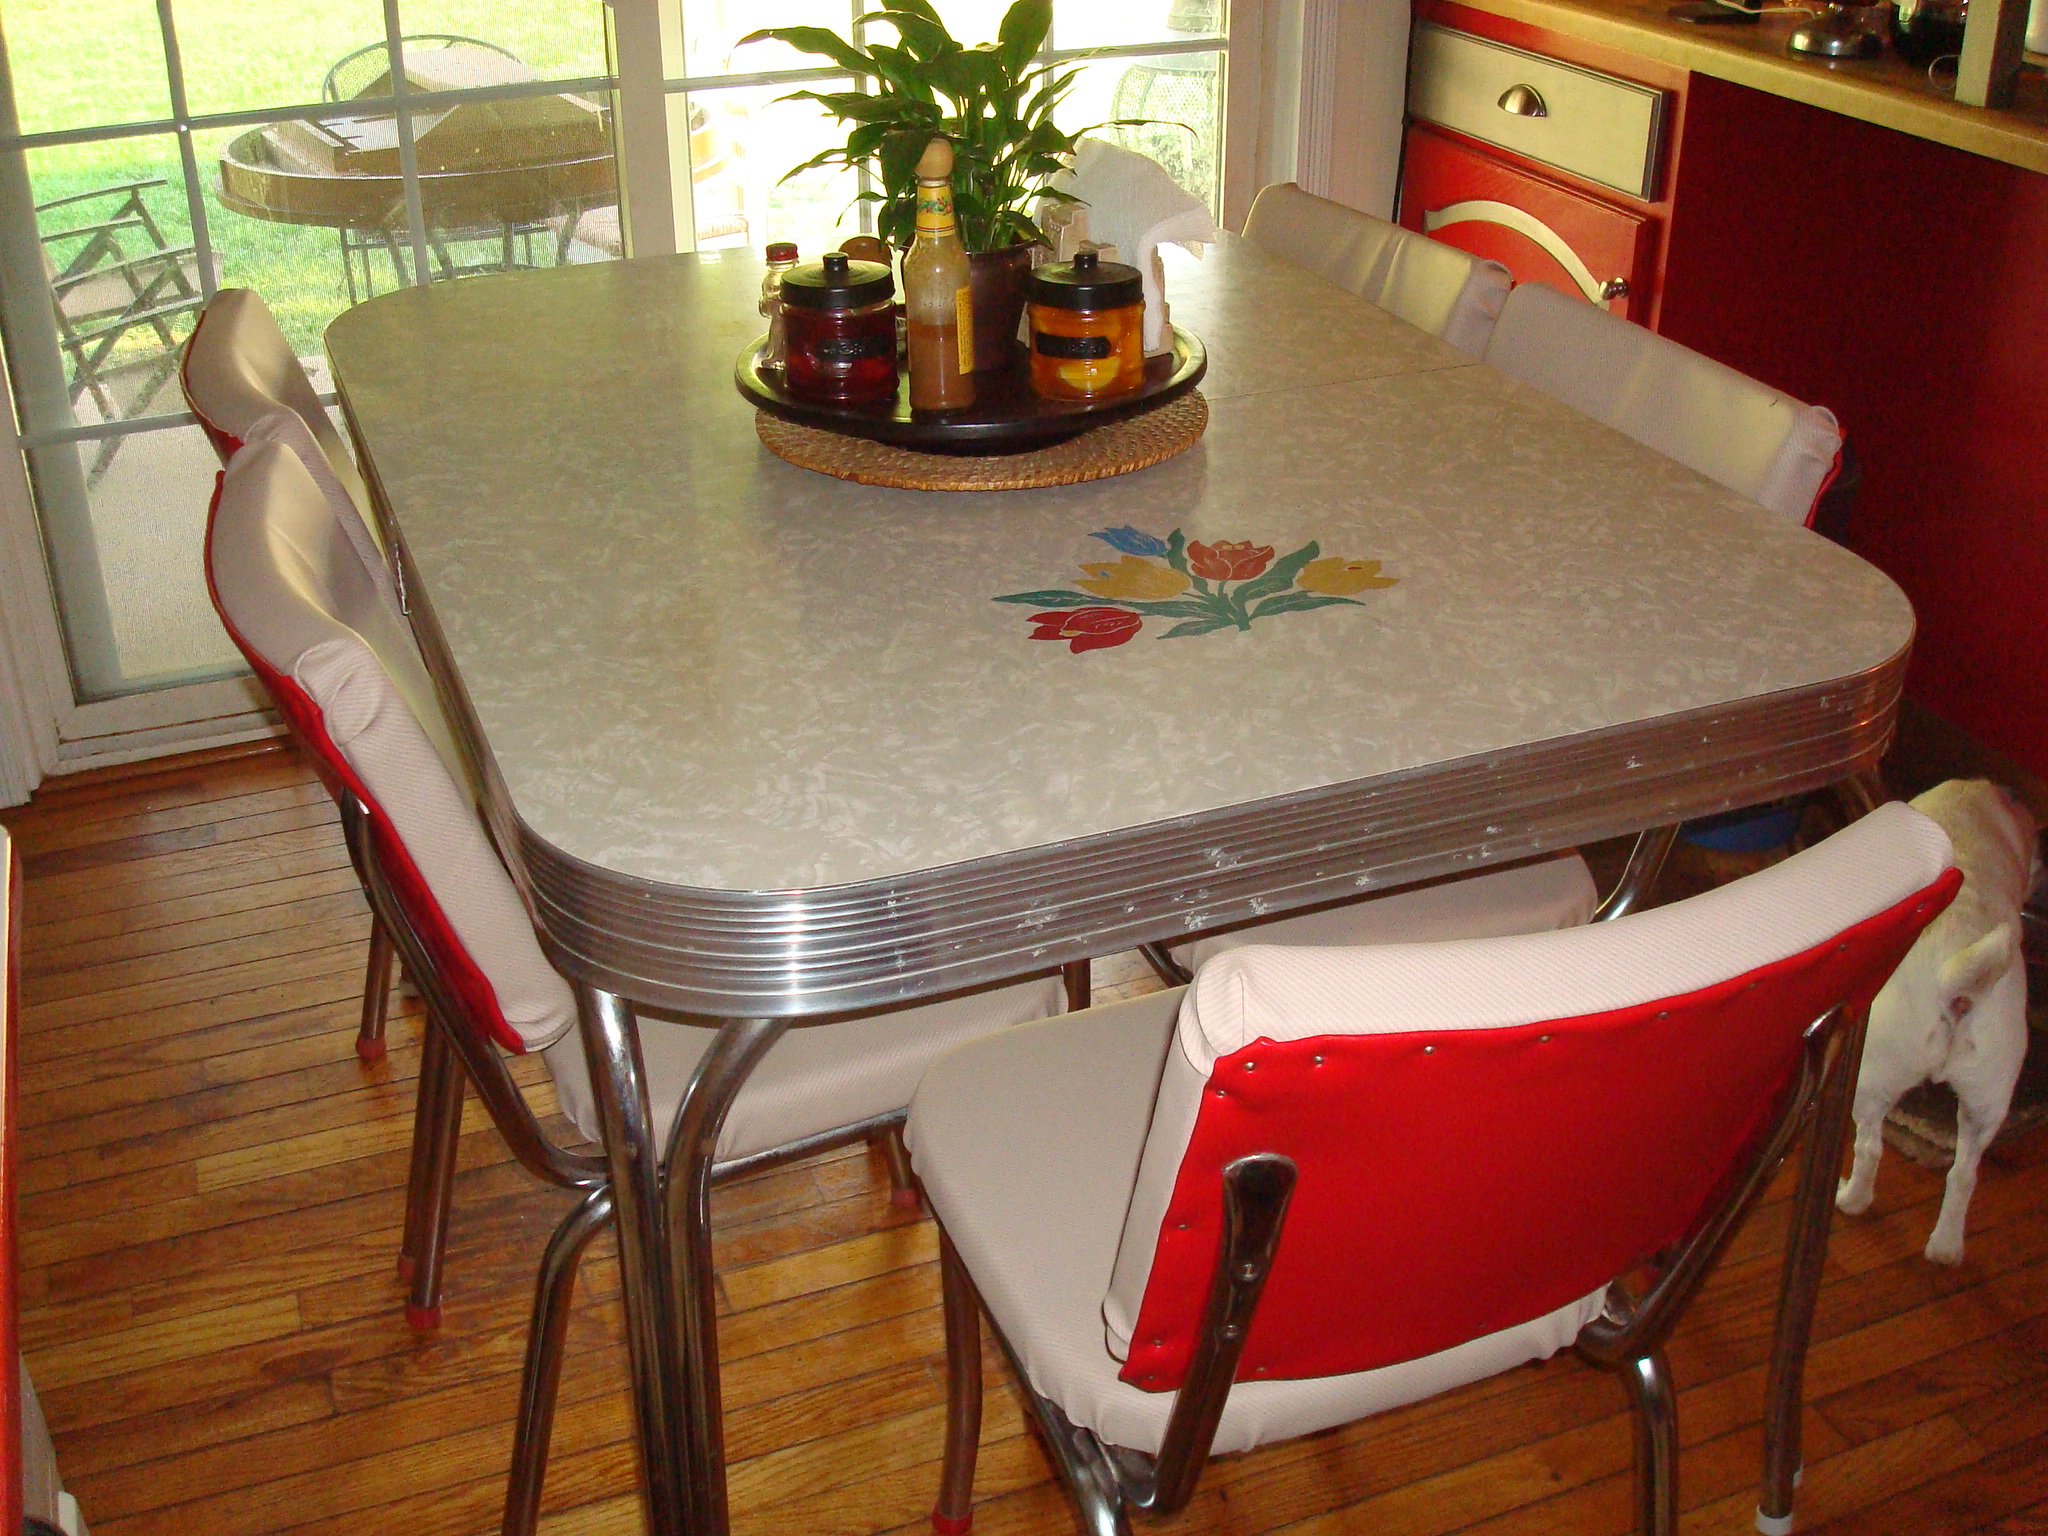 retro 50's style kitchen table